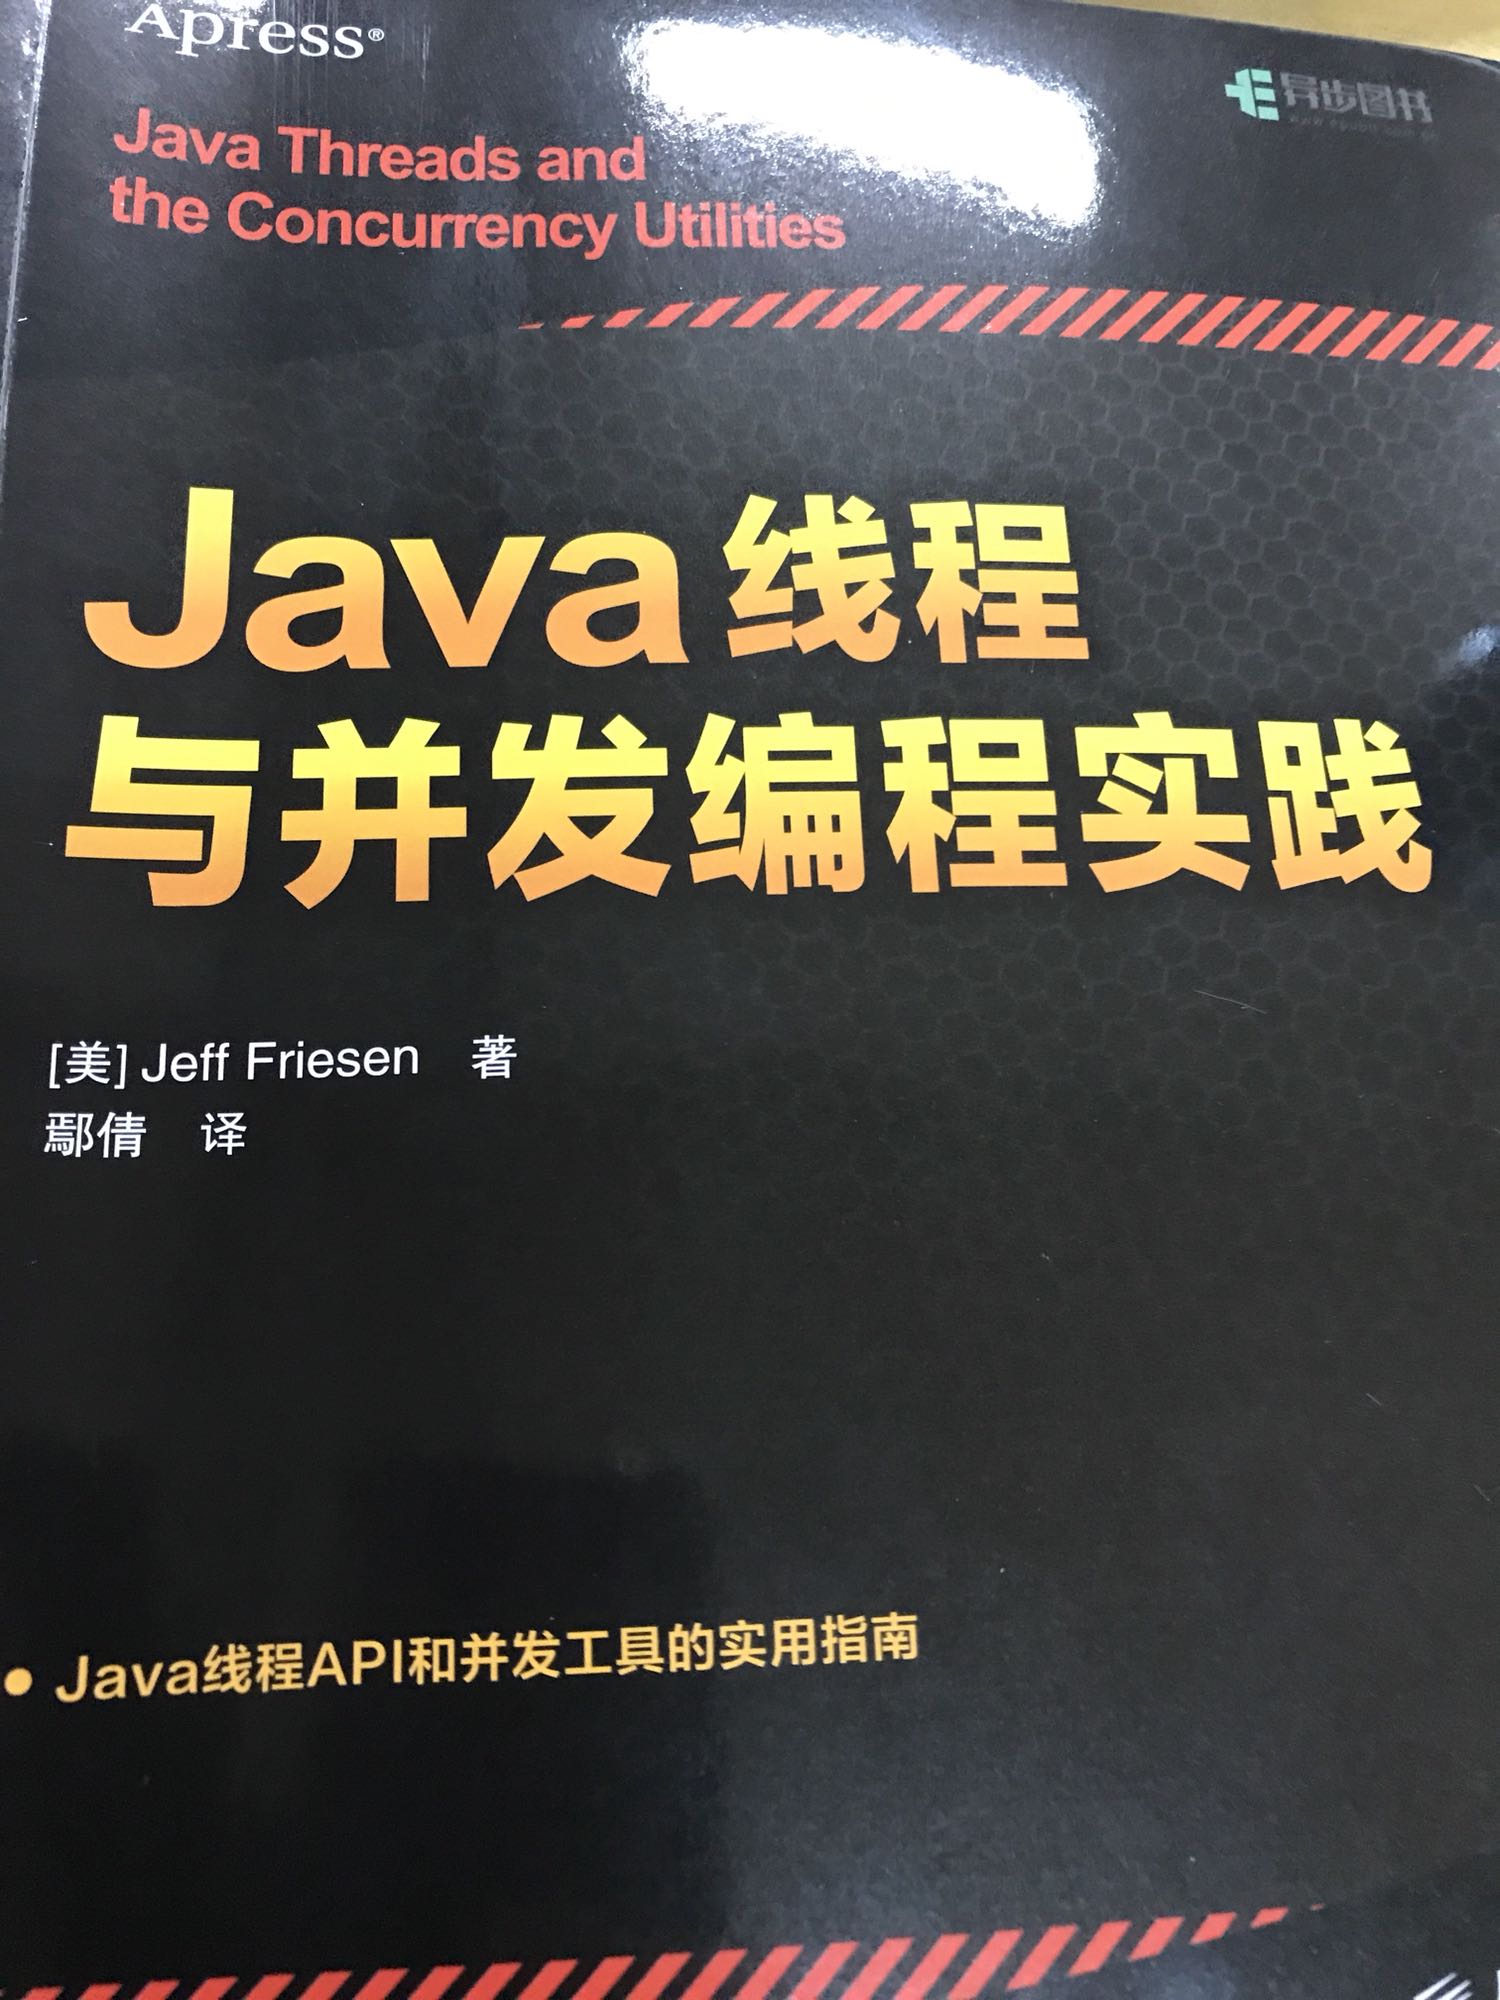 很基础的一本Java线程书籍